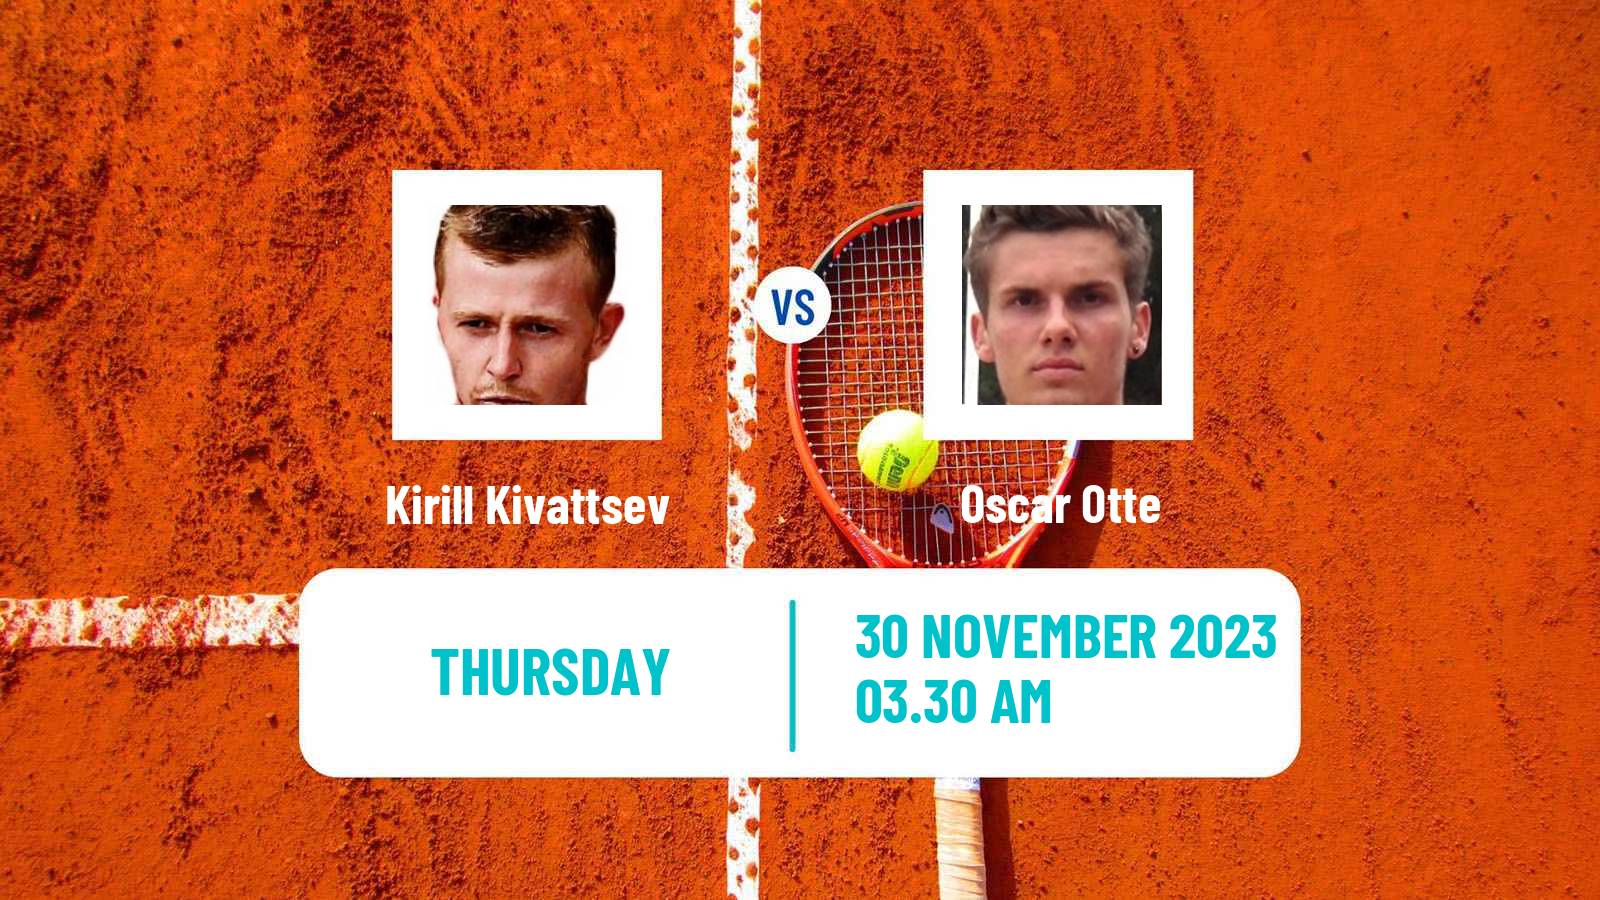 Tennis ITF M25 Monastir 10 Men Kirill Kivattsev - Oscar Otte